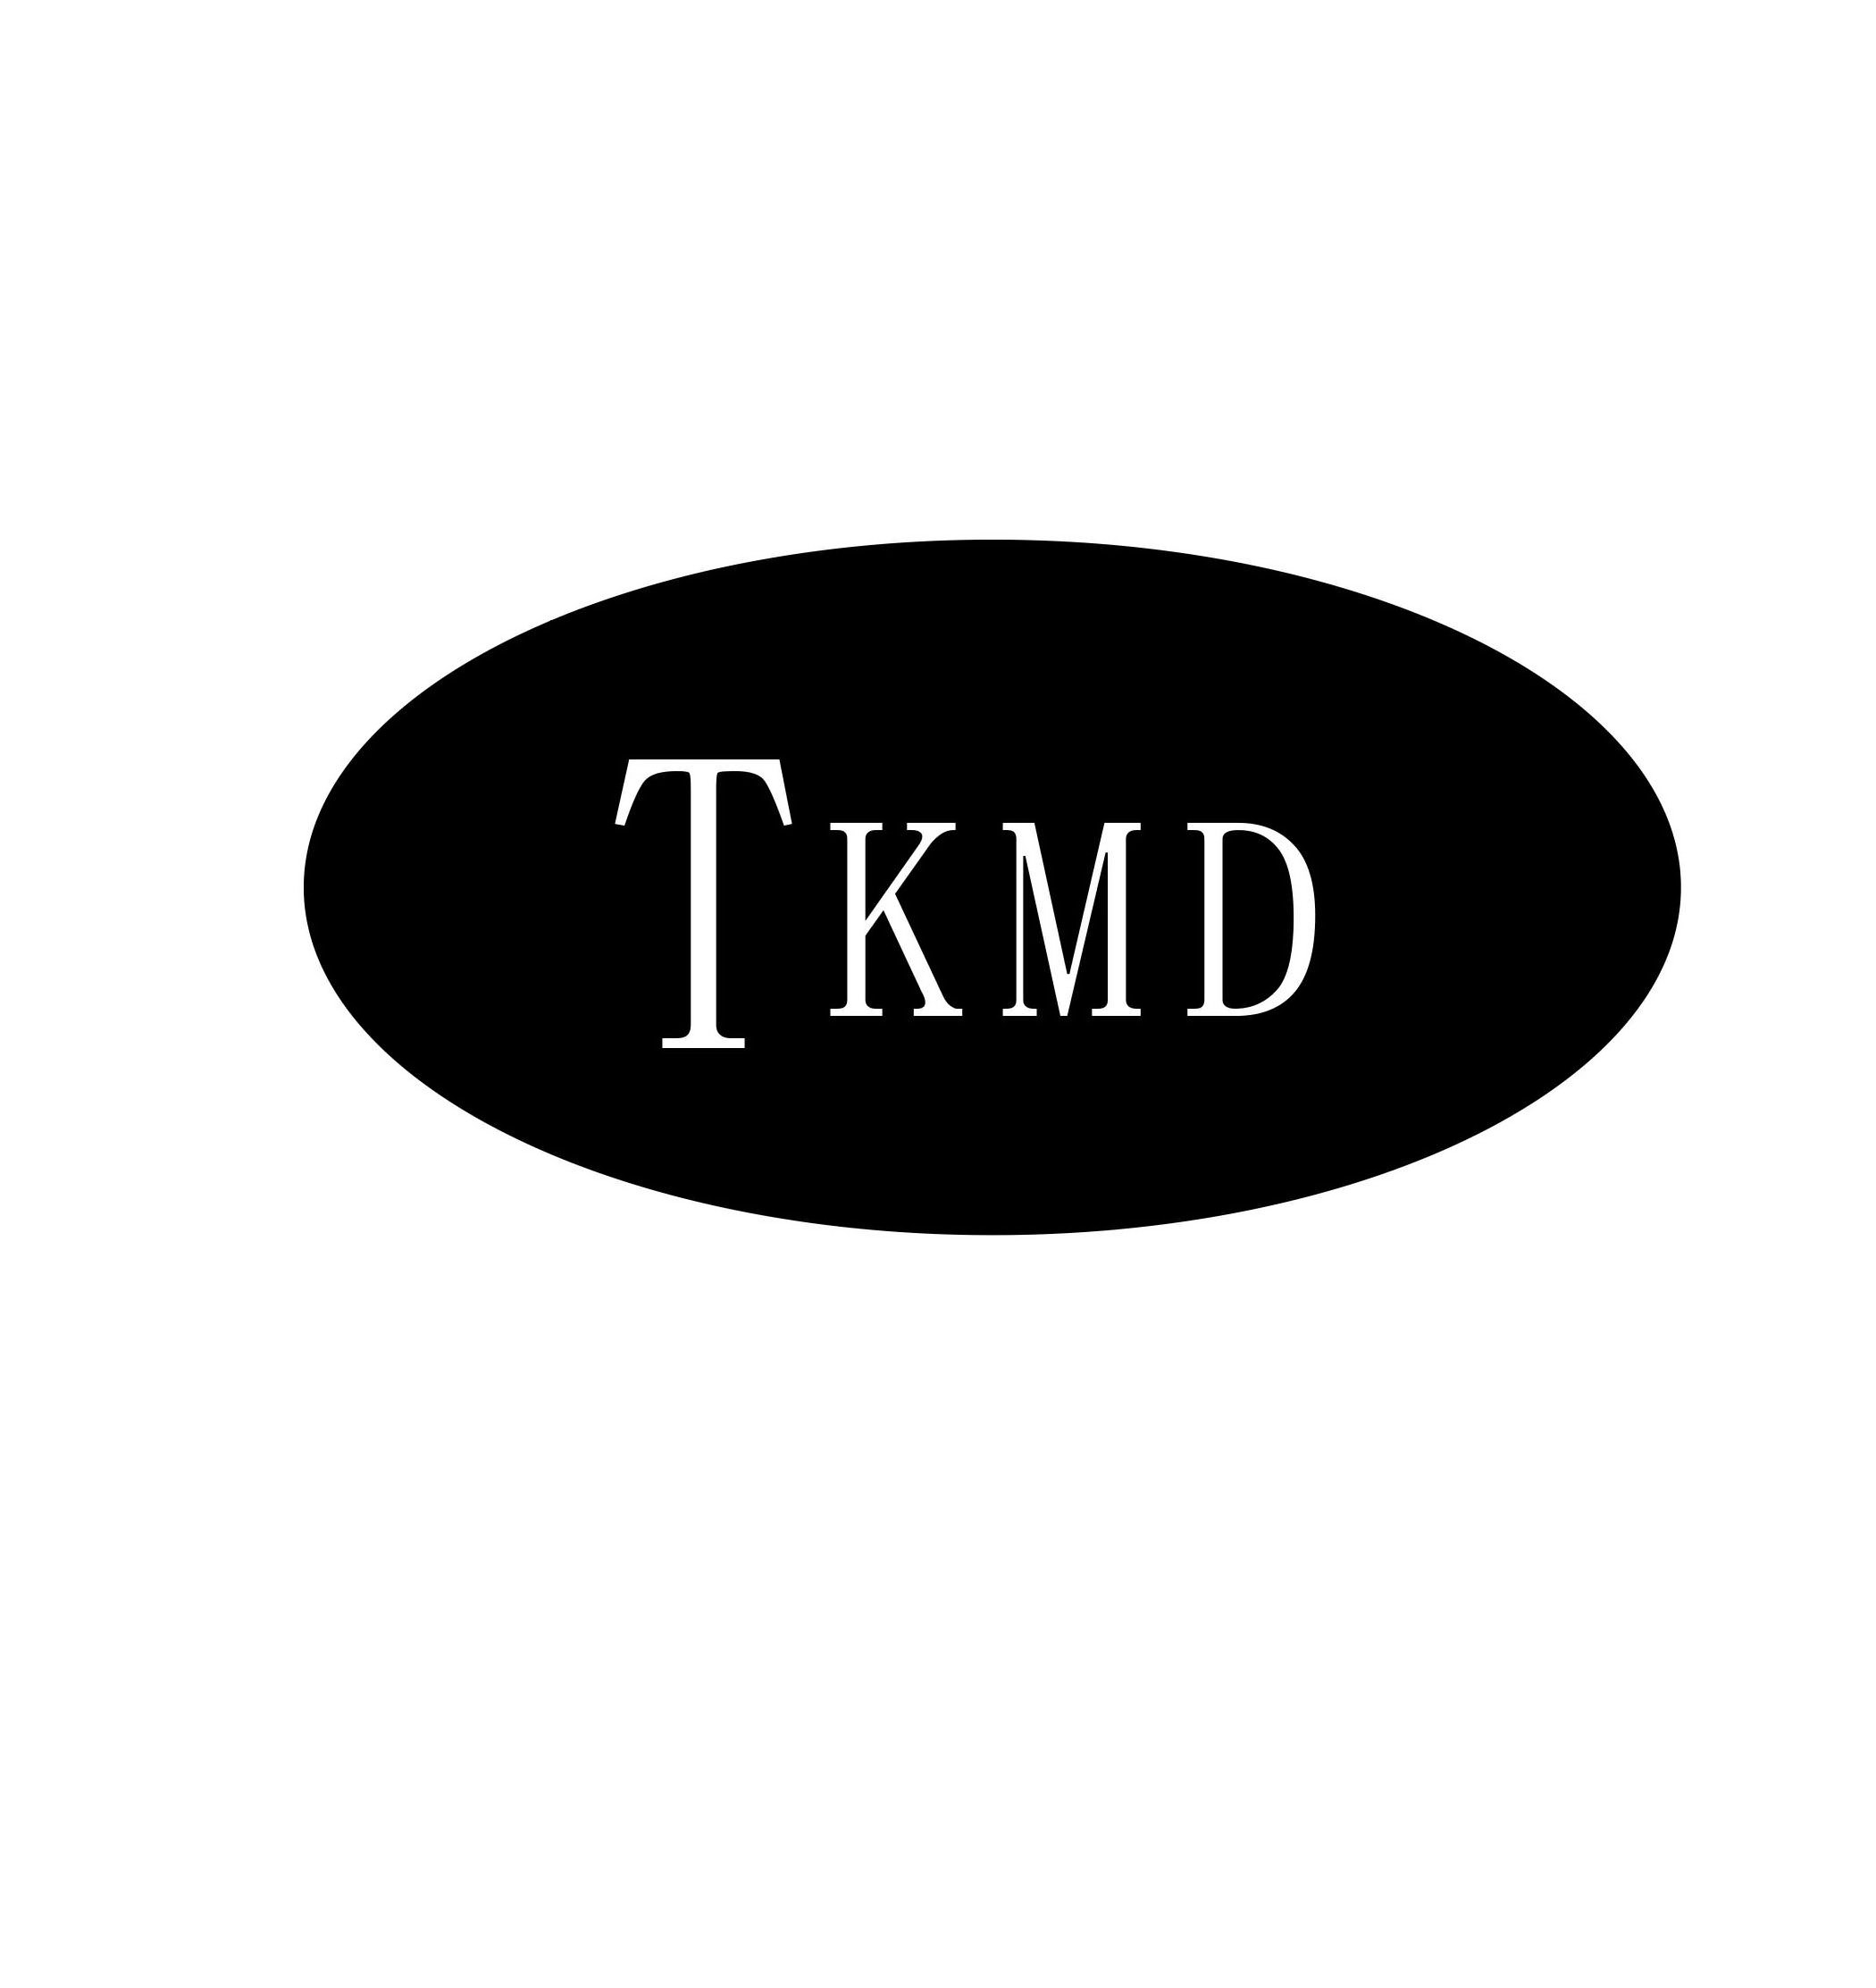 Trademark Logo TKMD